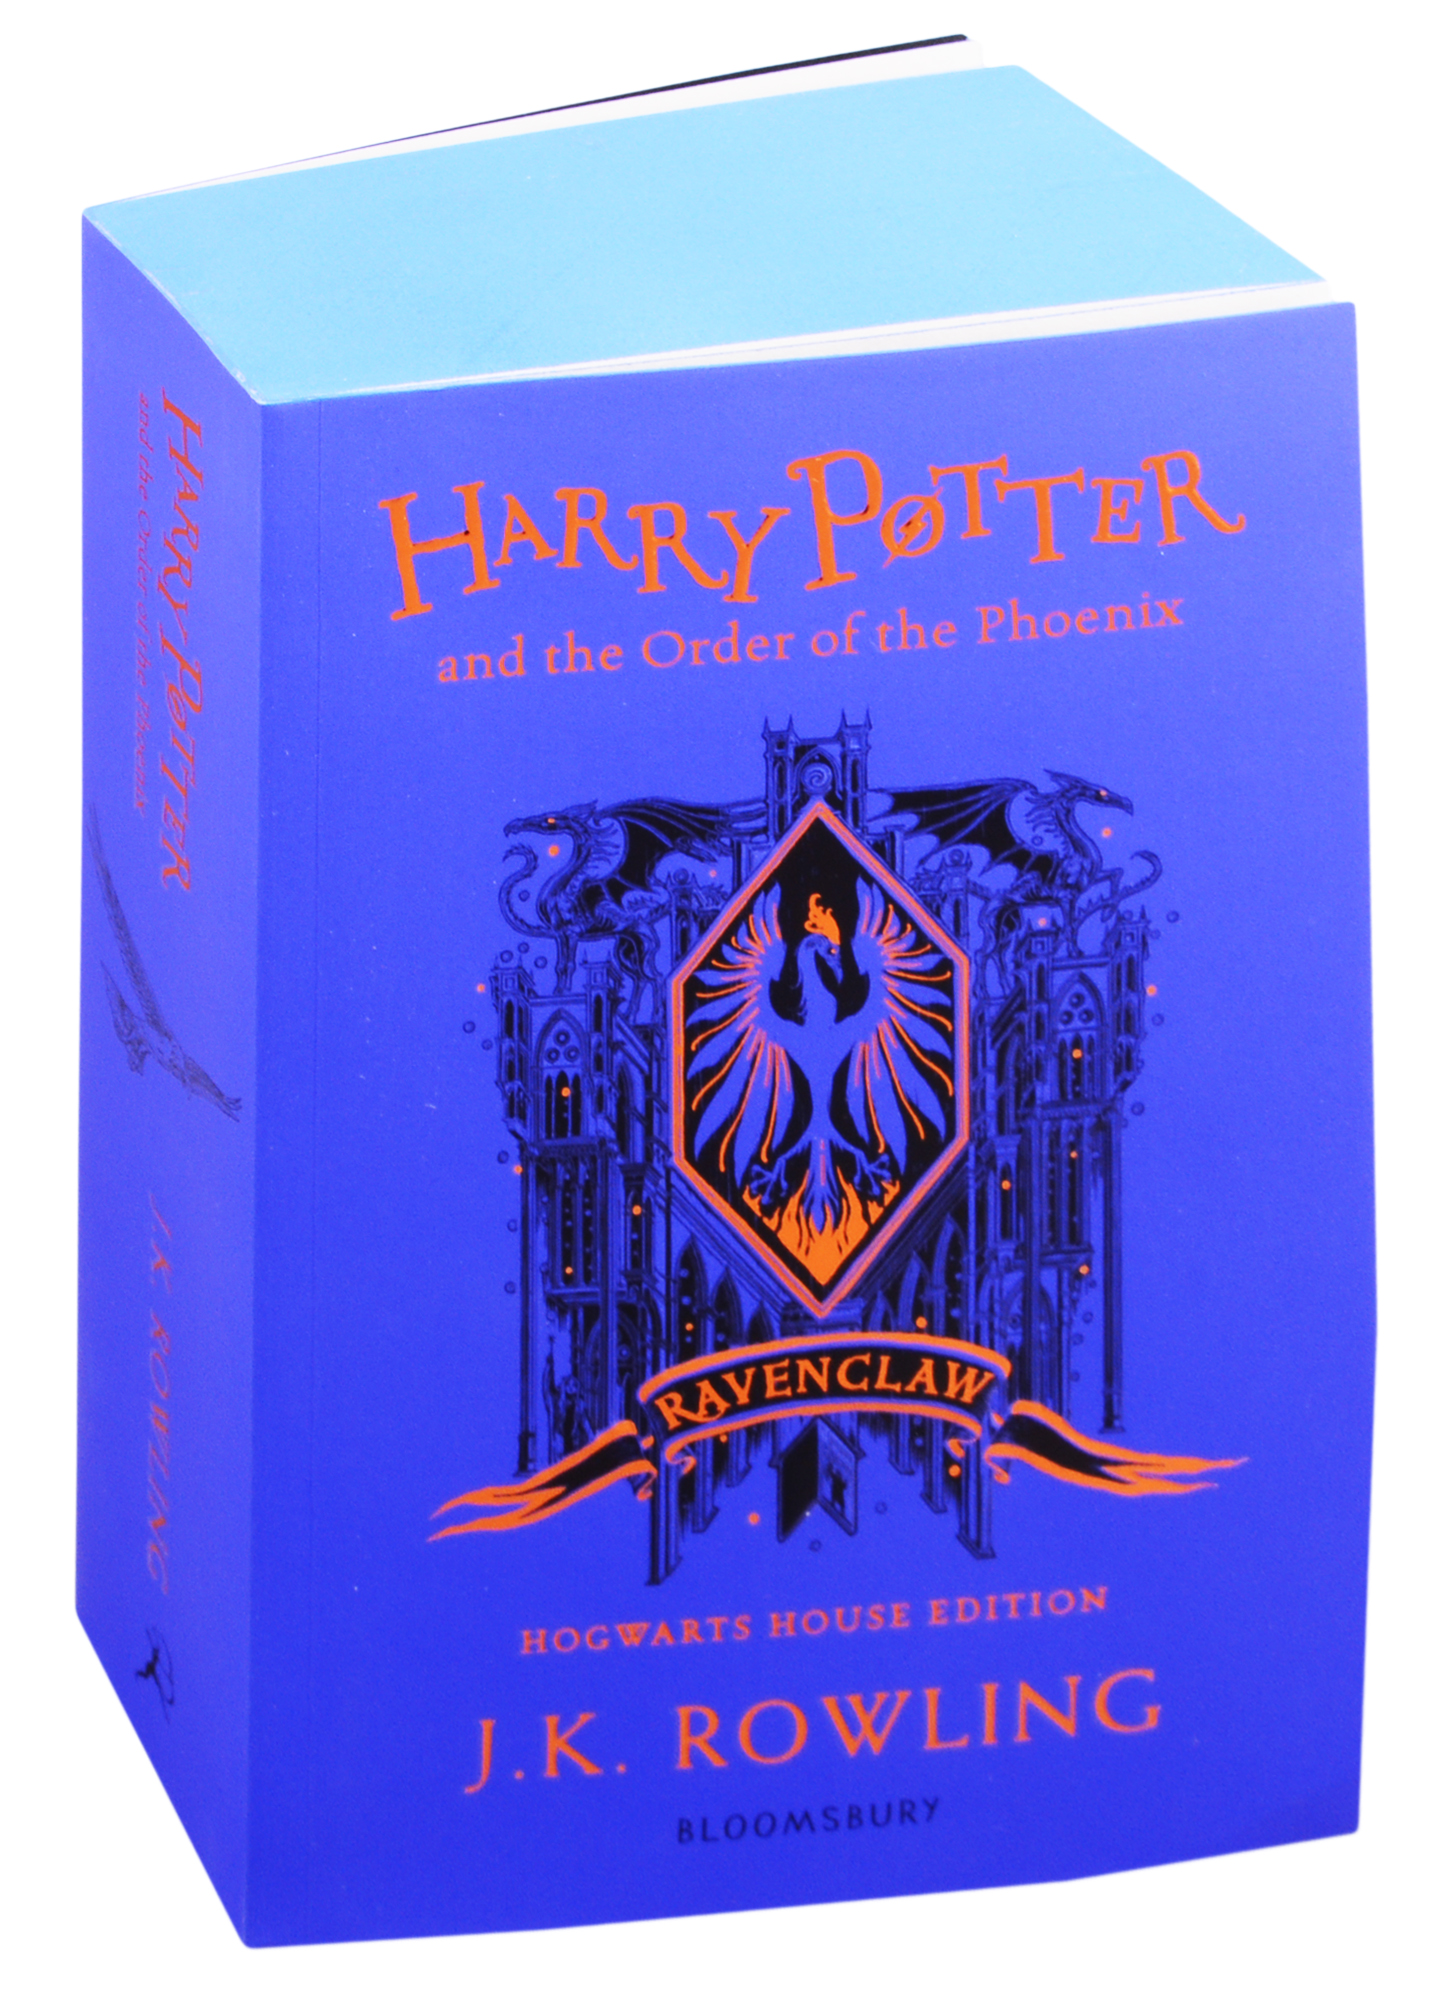 Роулинг Джоан Кэтлин - Harry Potter and the Order of the Phoenix 1 - Ravenclaw Edition